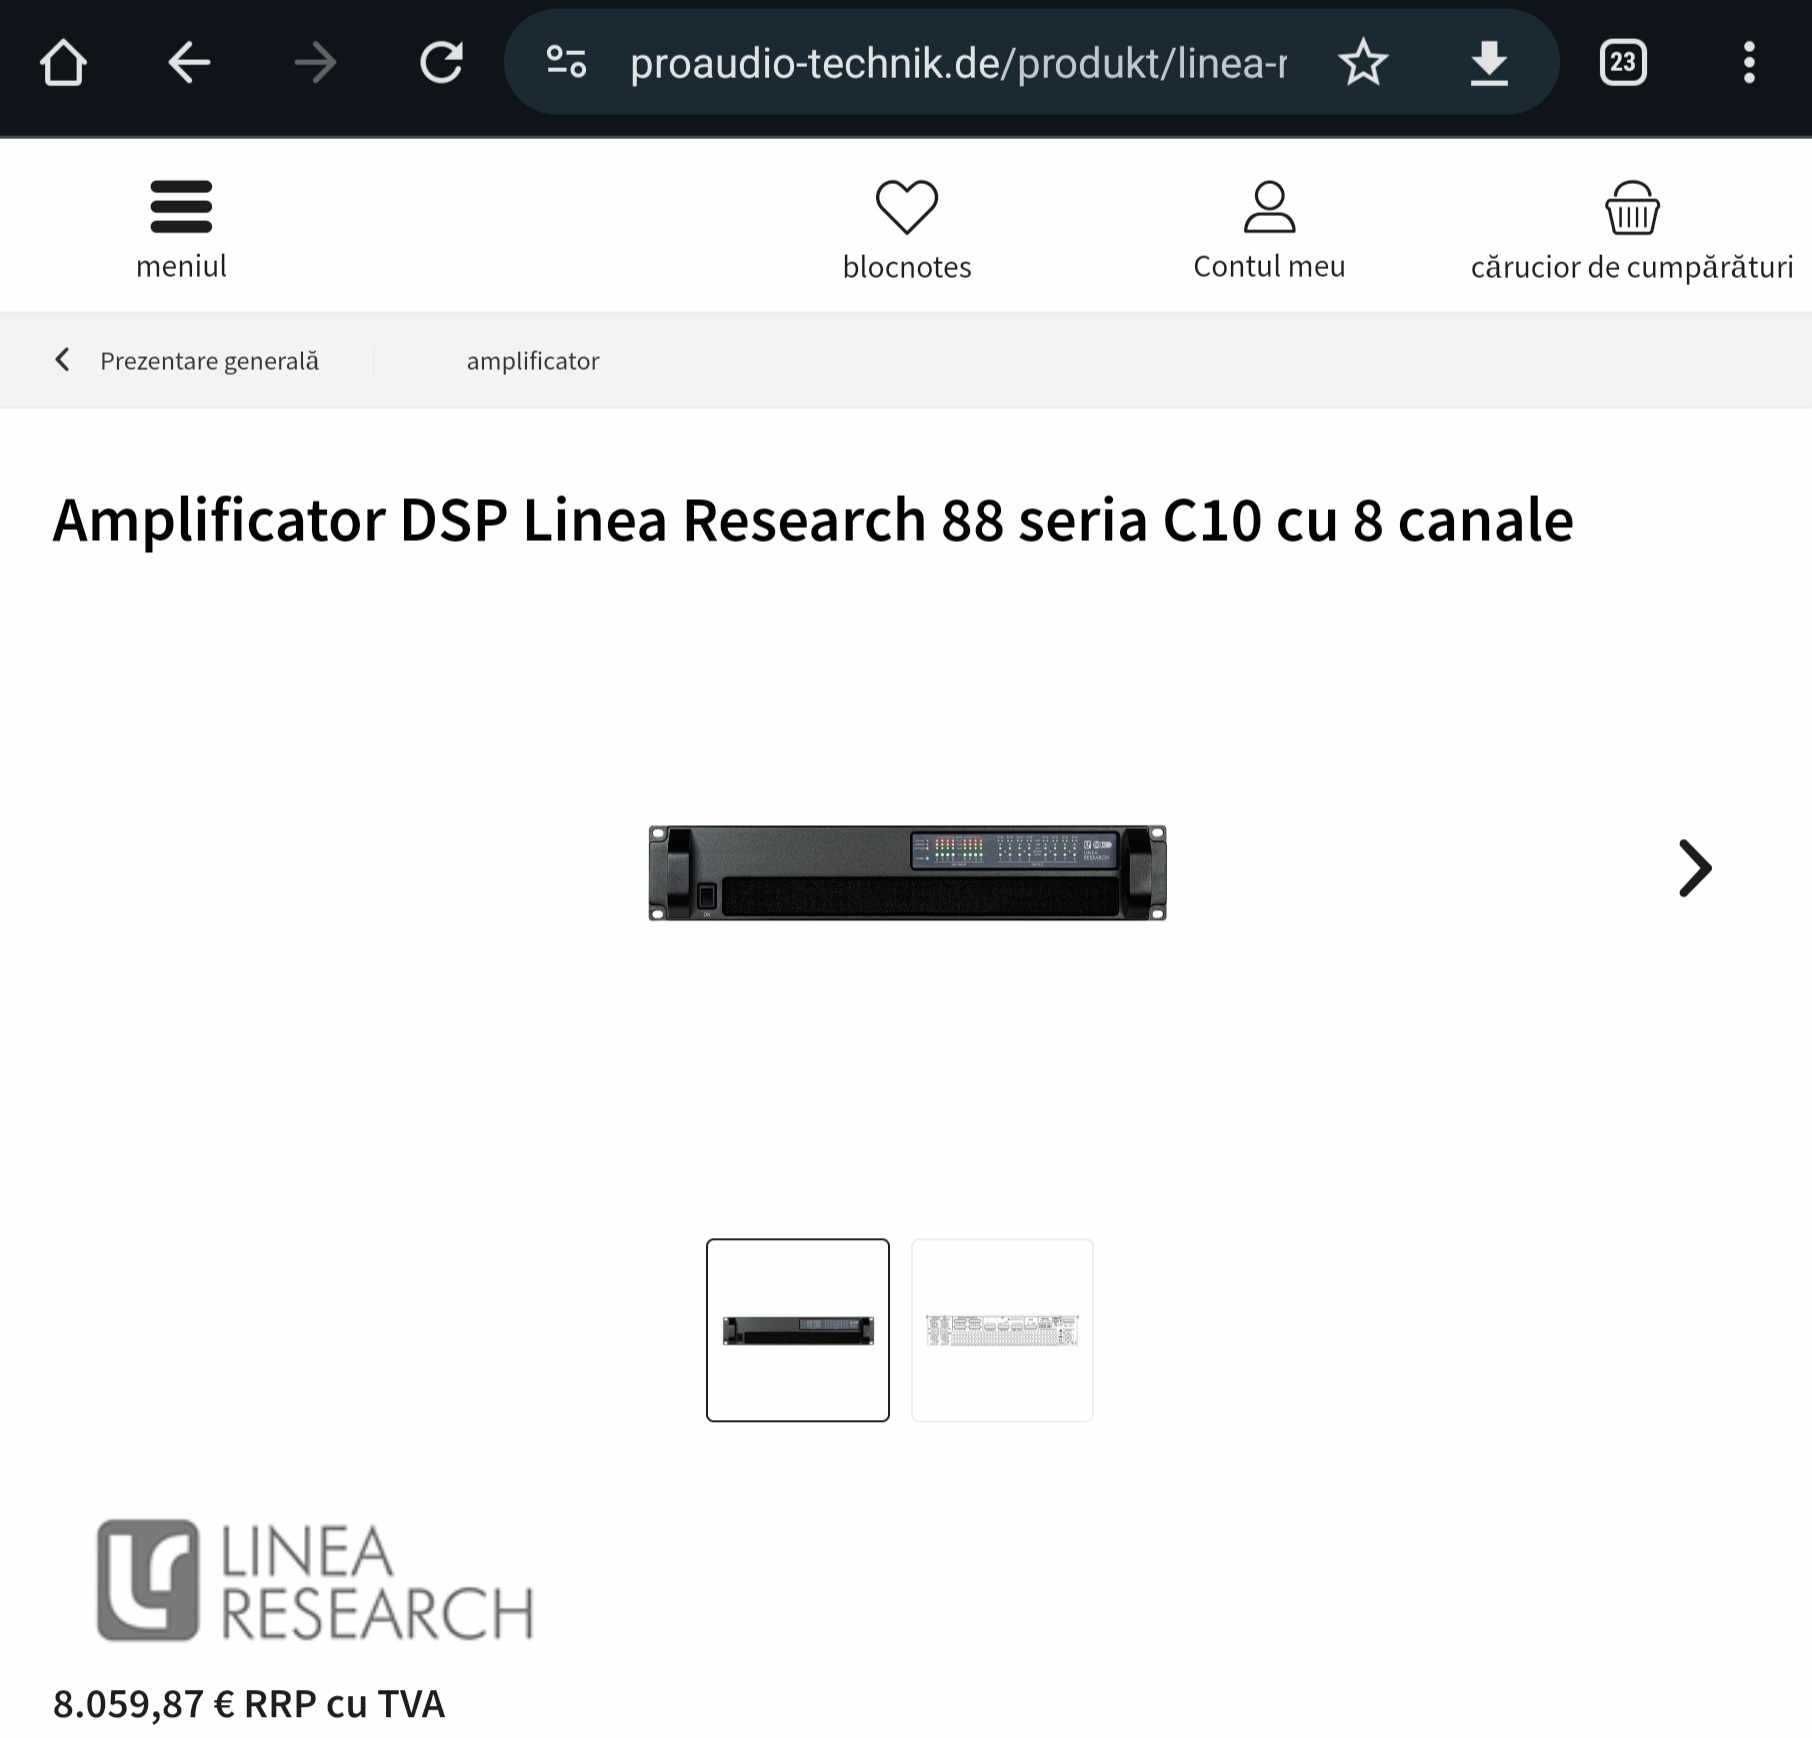 Amplificator DSP Linea Research 88 seria C10 cu 8 canale